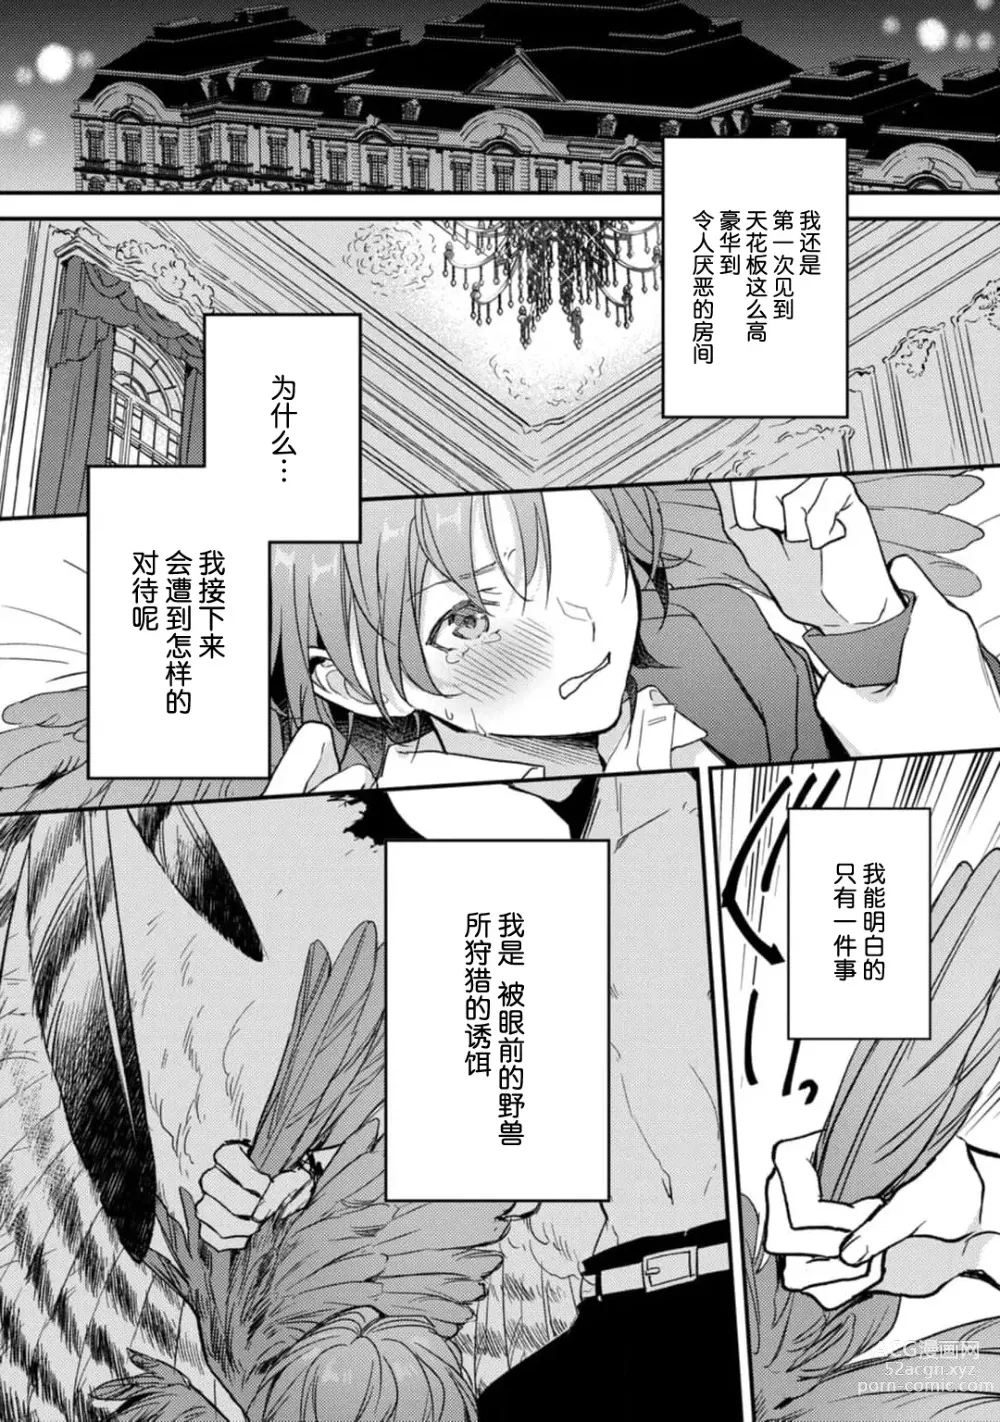 Page 5 of manga 枭与夜想曲 act. 1